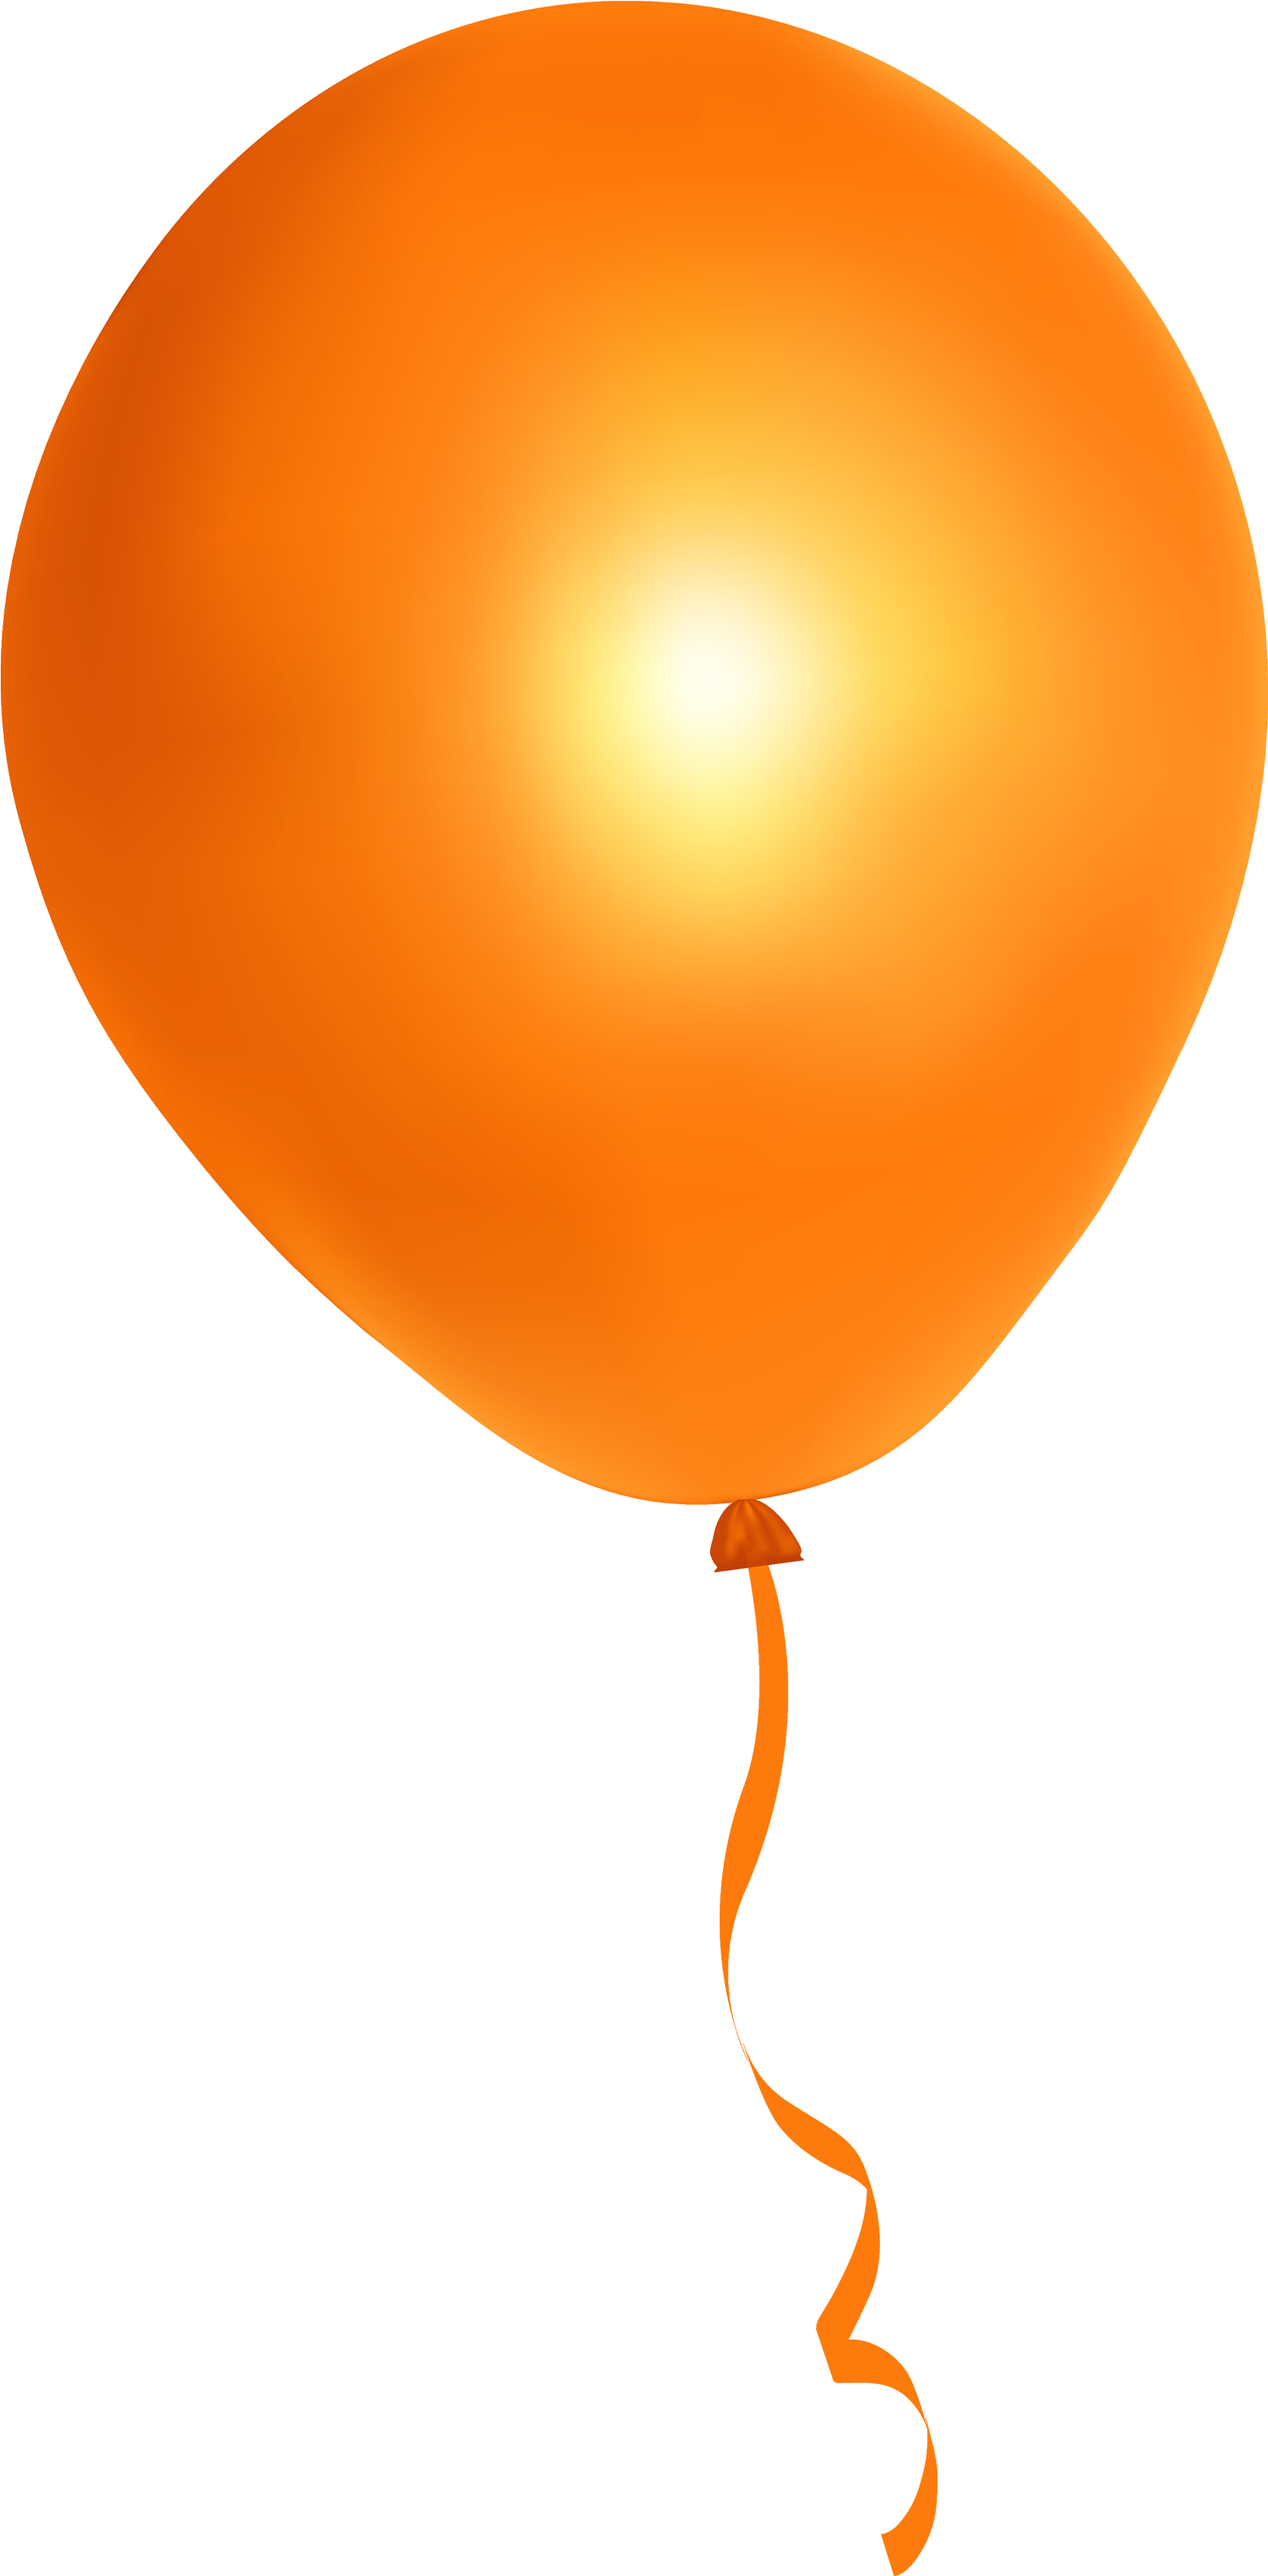 Orange Balloon Png Image - Orange Balloon Transparent Background (500x836), Png Download